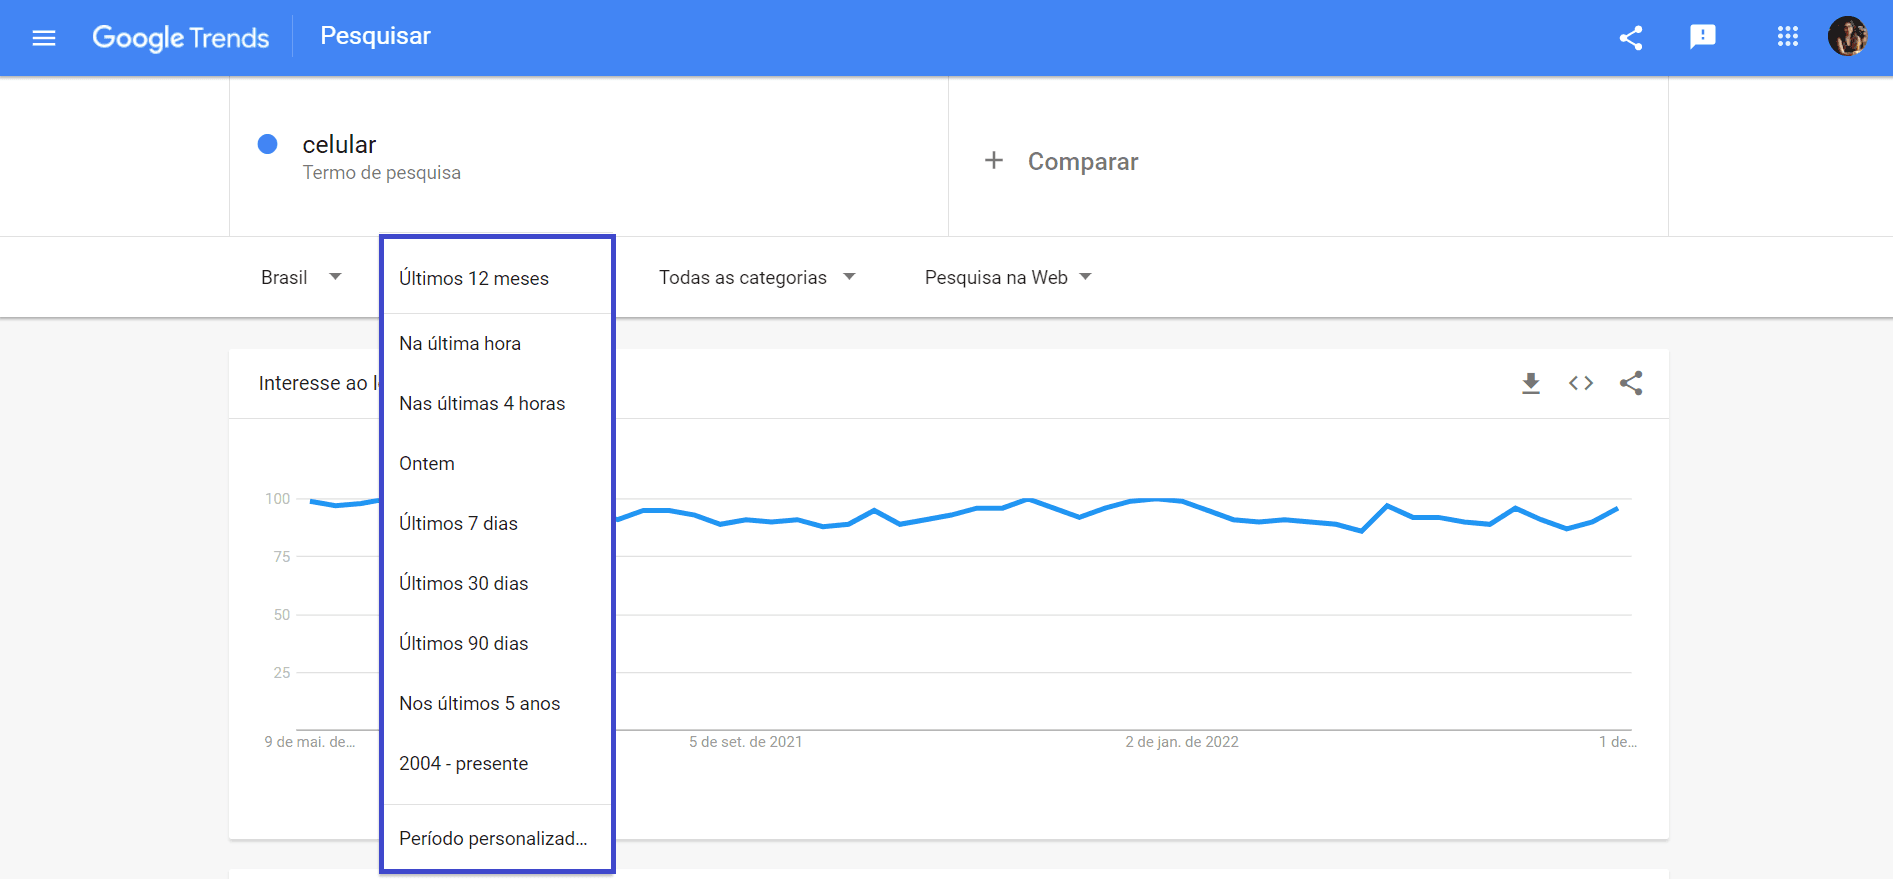 Como usar o Google Trends - Filtre os campos